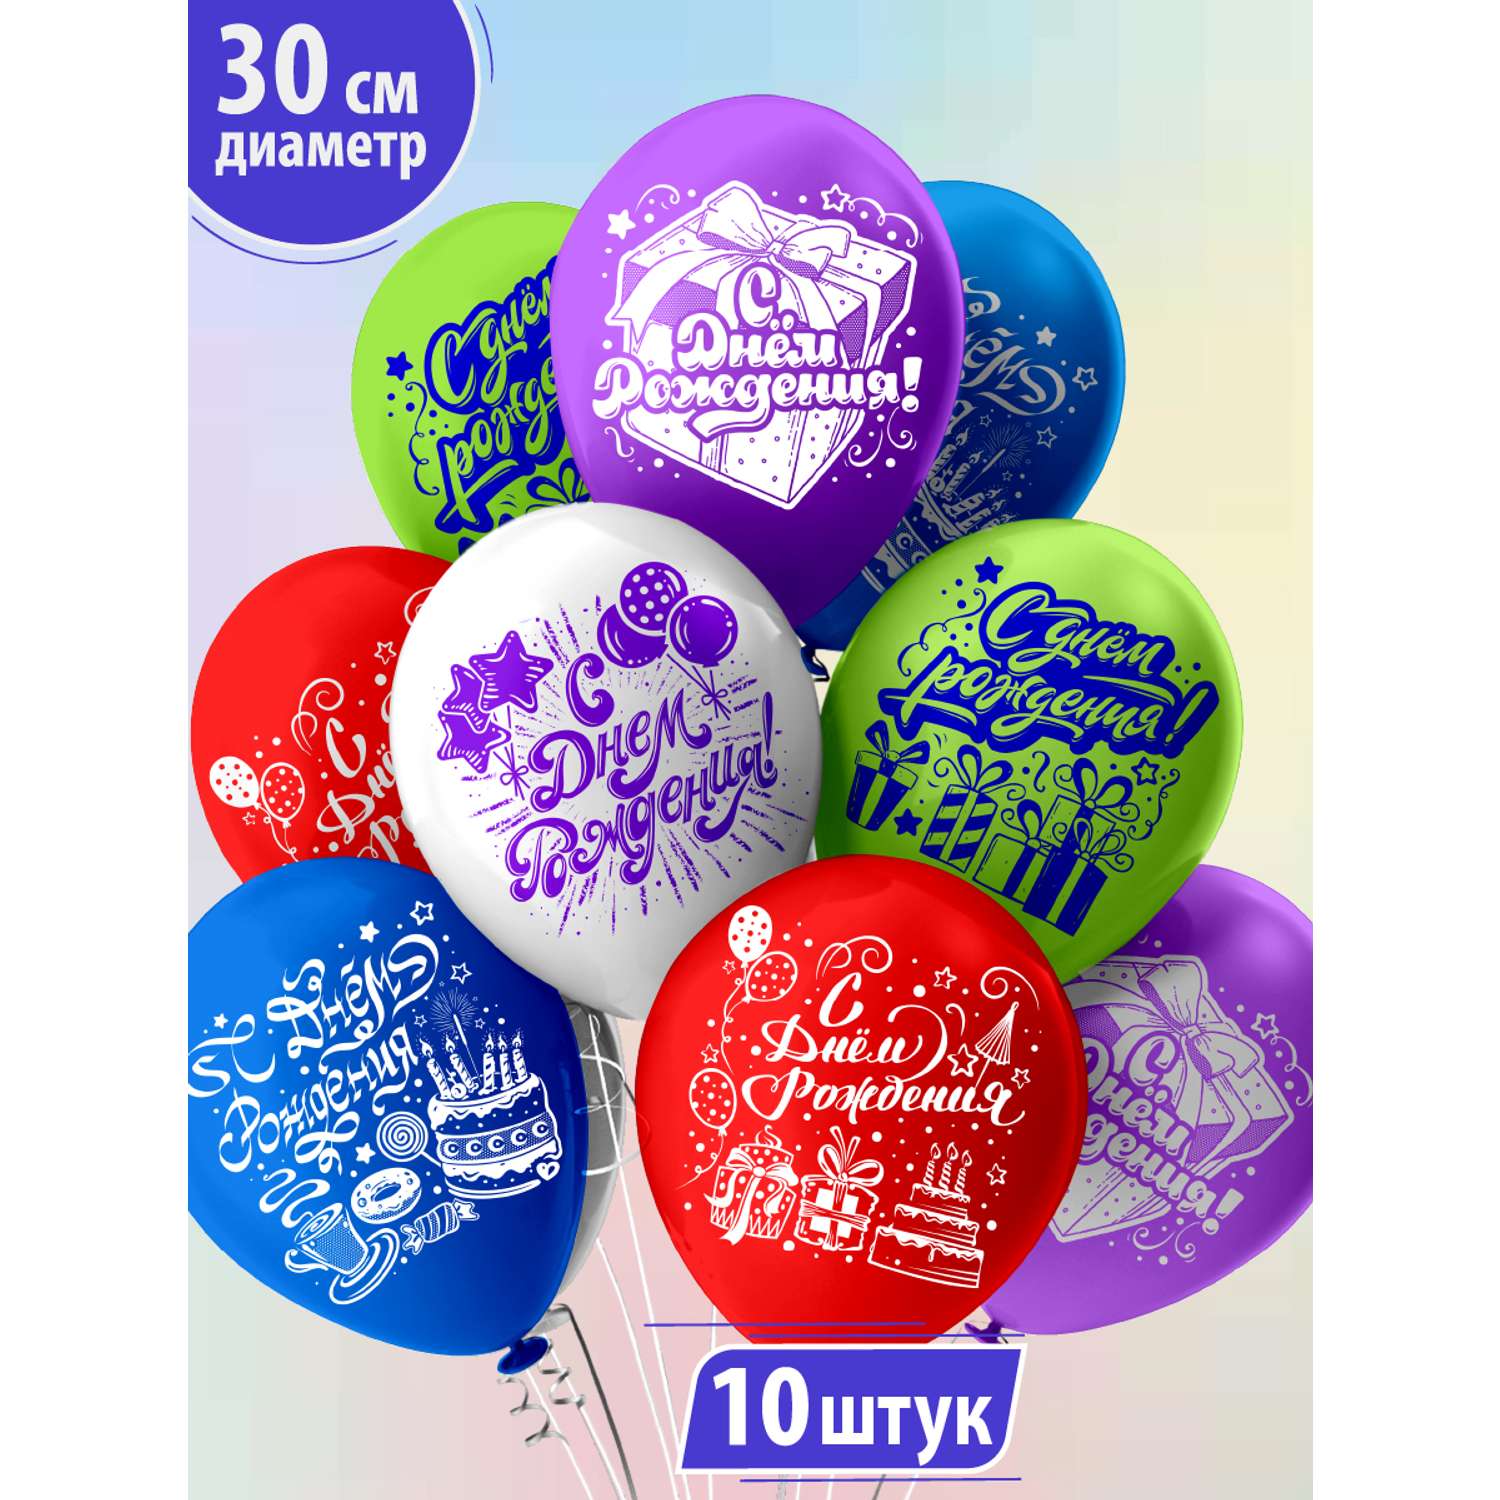 Воздушные шары для праздника МИКРОС. Территория праздника «С днем рождения» набор 10 штук - фото 1